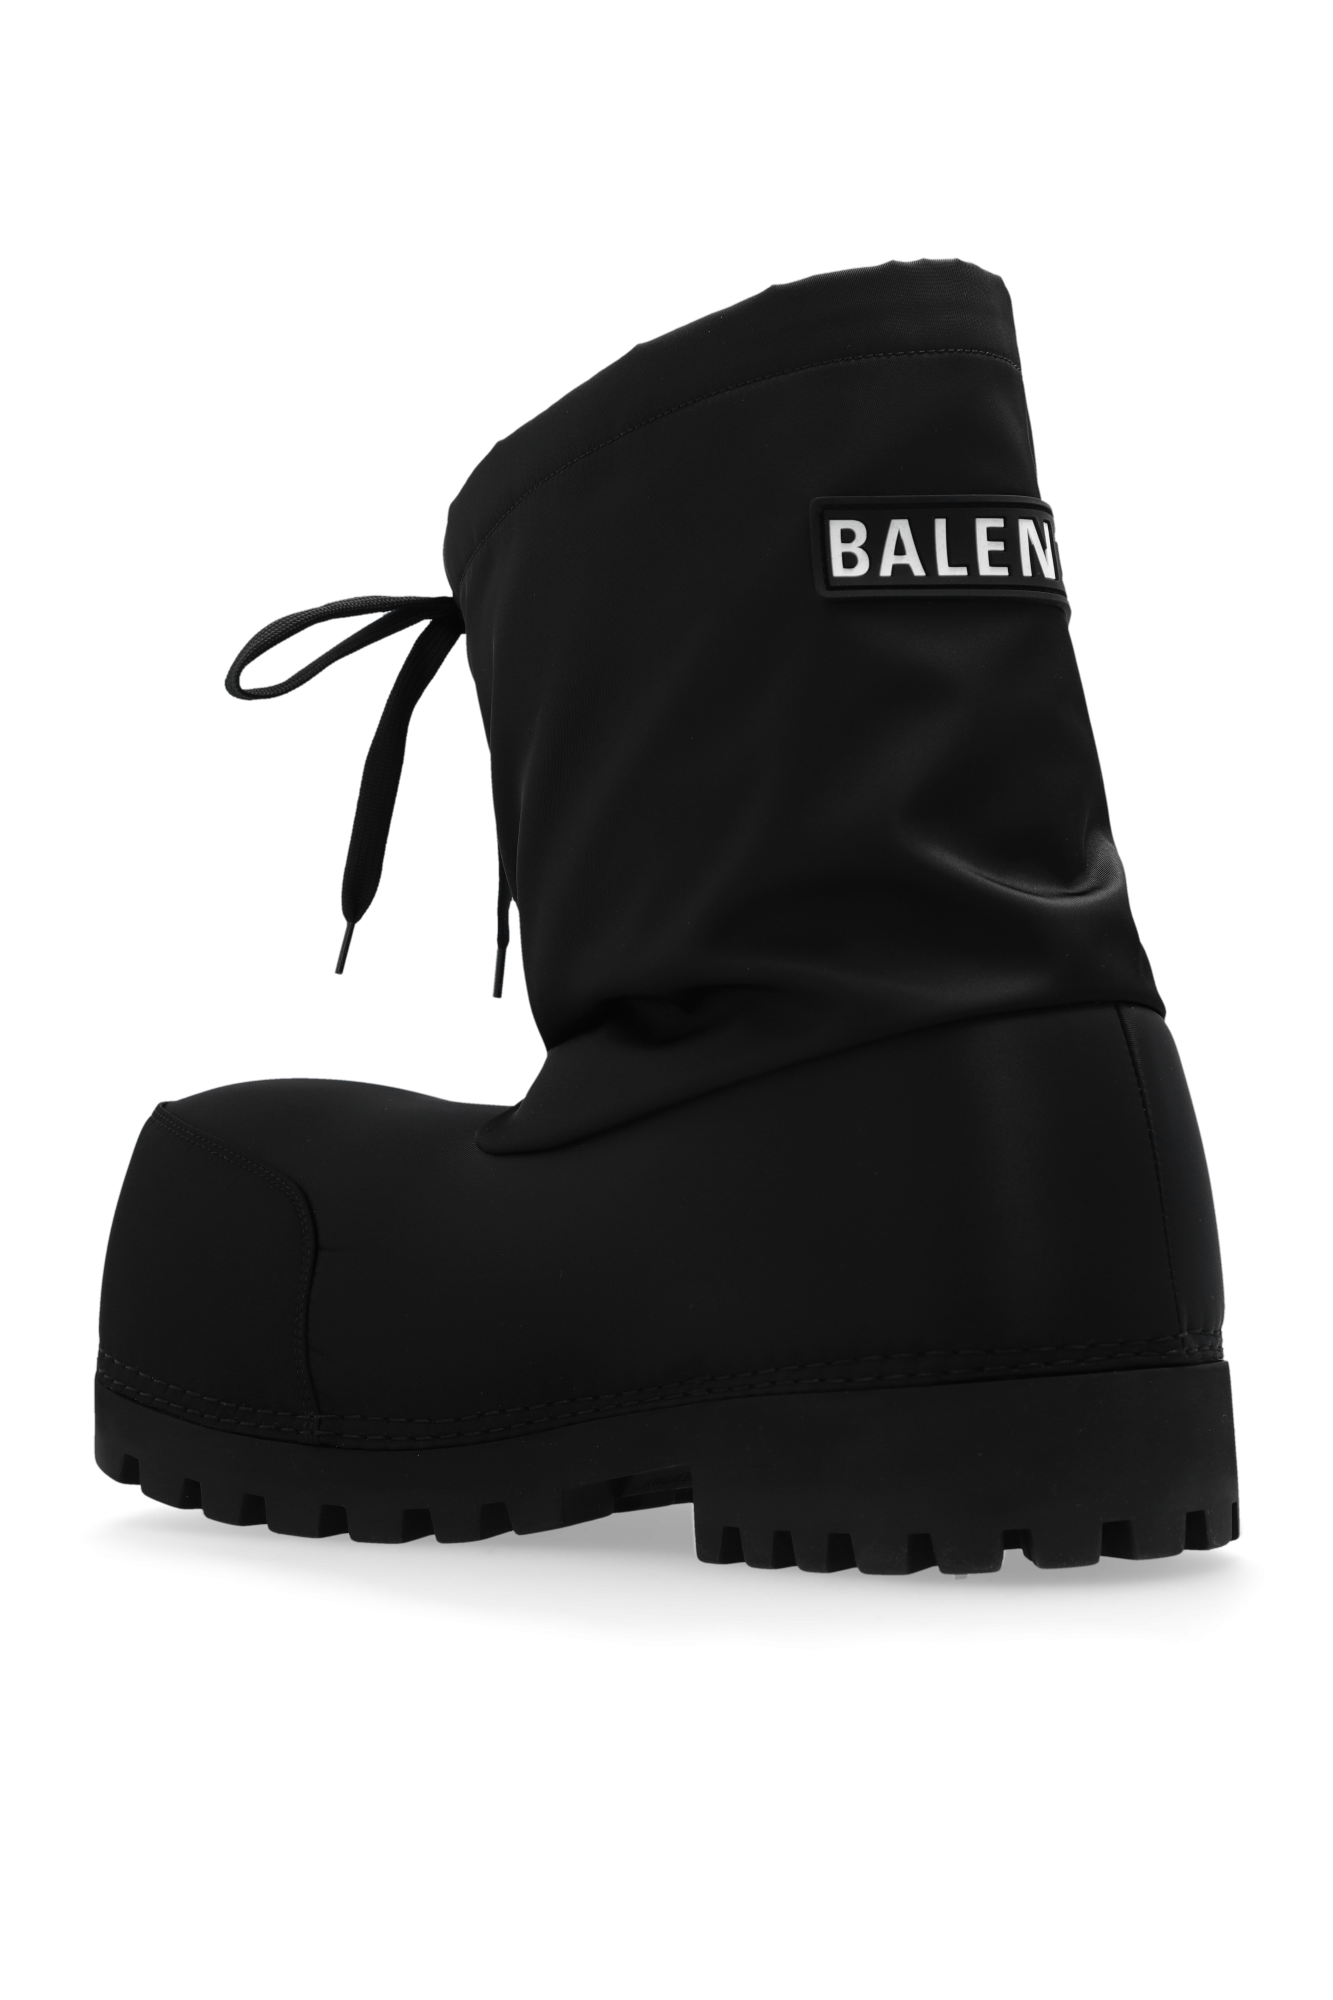 Balenciaga ‘Skiwear’ collection ‘Alaska’ snow boots